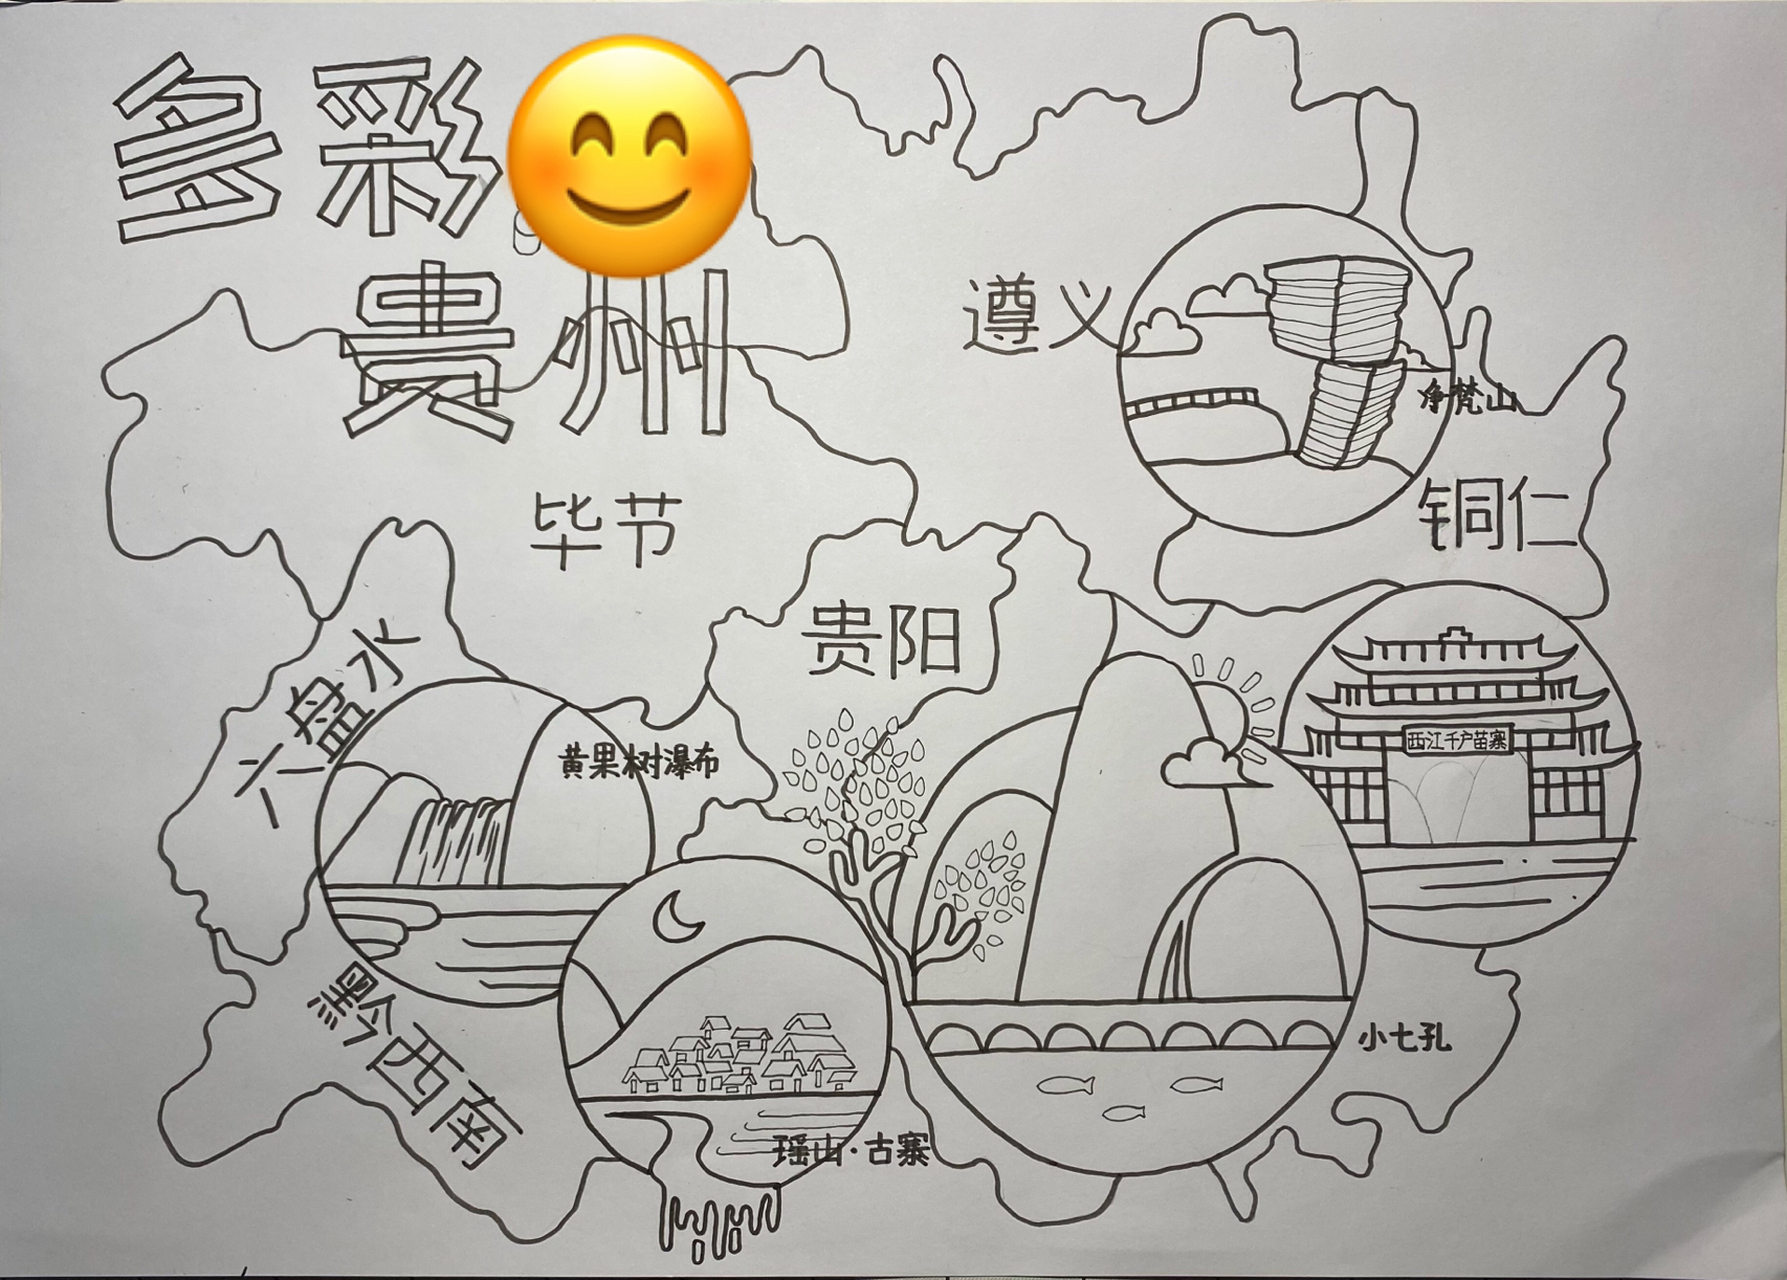 中国版图多彩贵州手绘地图儿童画 客稿,已投比赛,慎重参考,借鉴需改稿